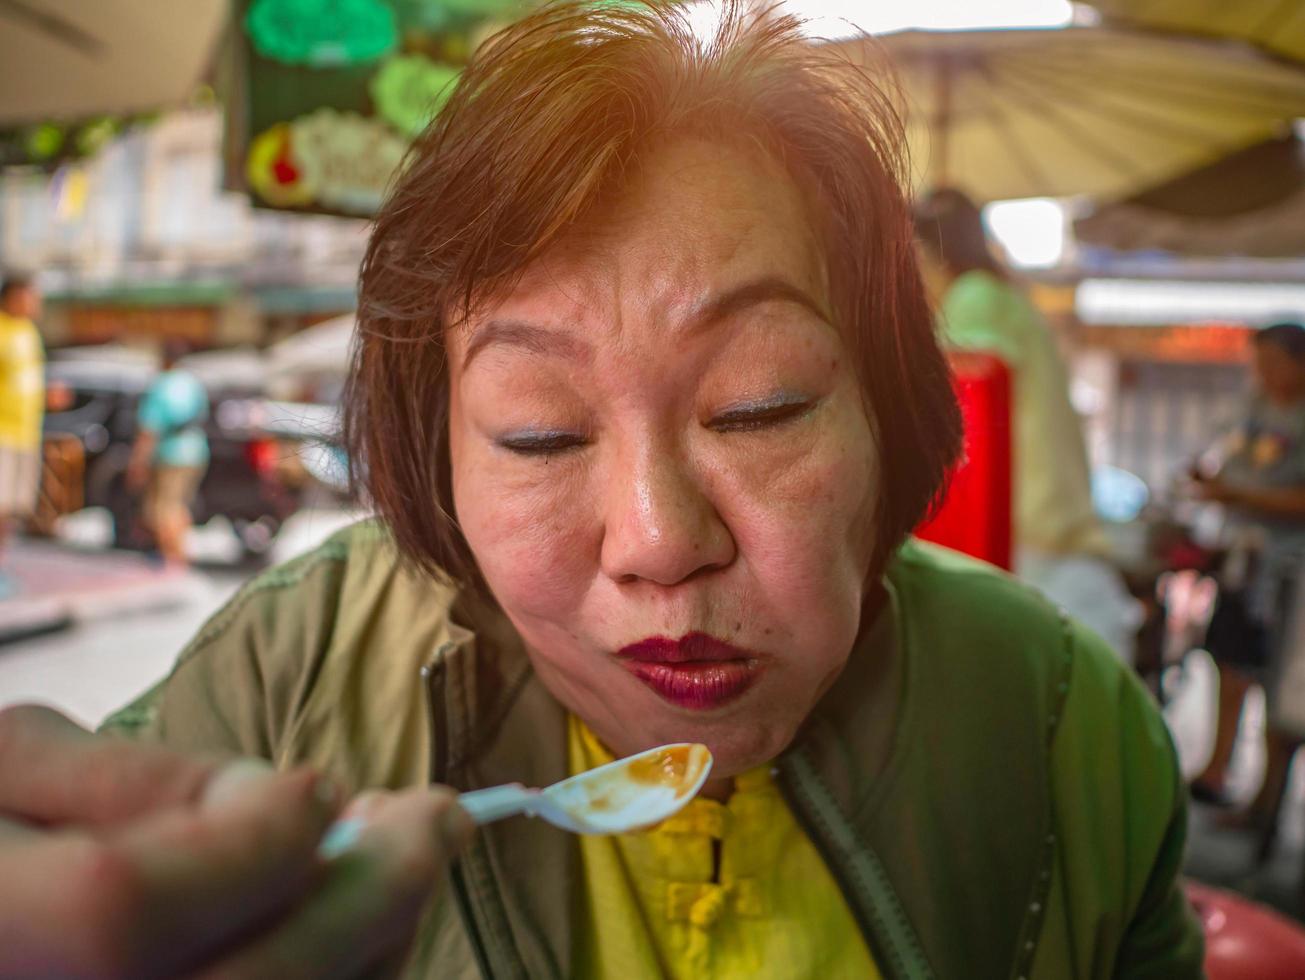 les vieilles femmes asiatiques heureuses qui mangent ont l'air très délicieuses photo